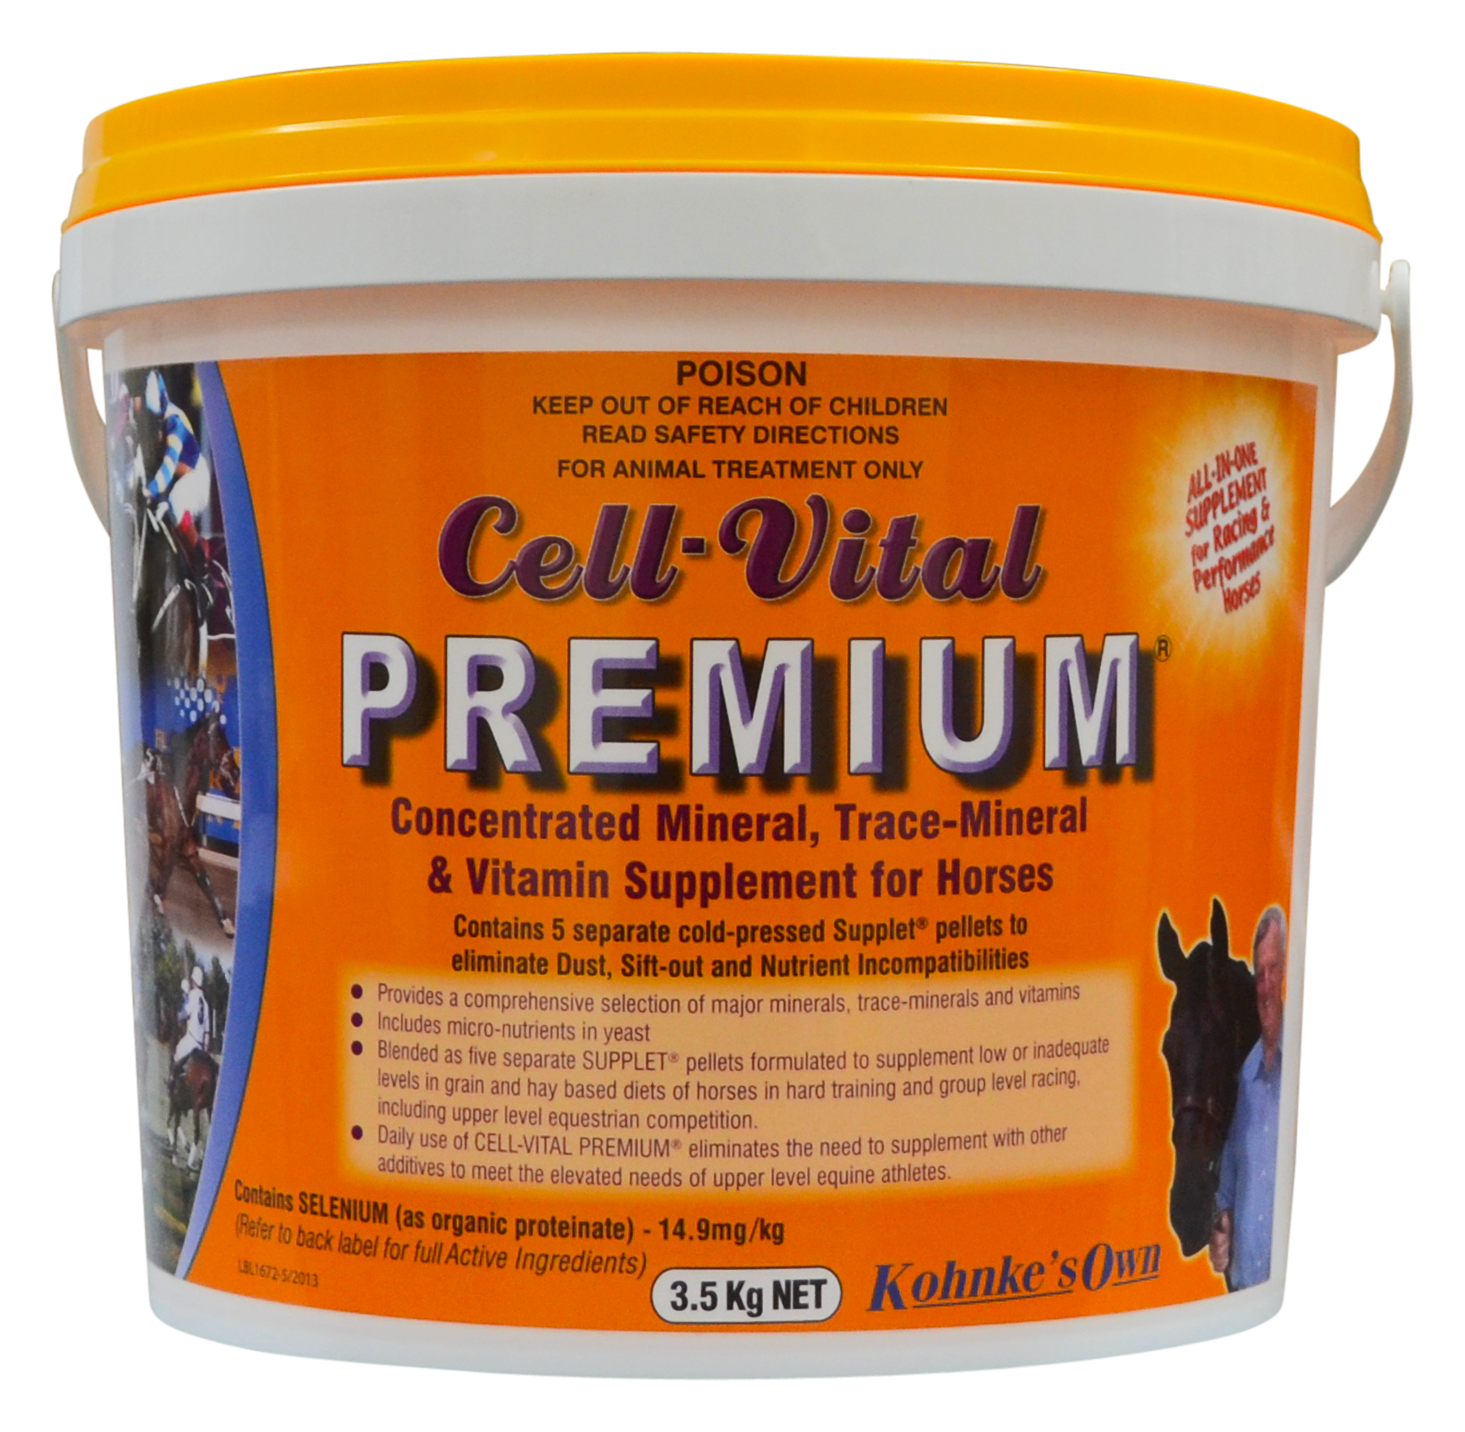 Cell Vital Premium 3.5kg (Kohnke's Own)